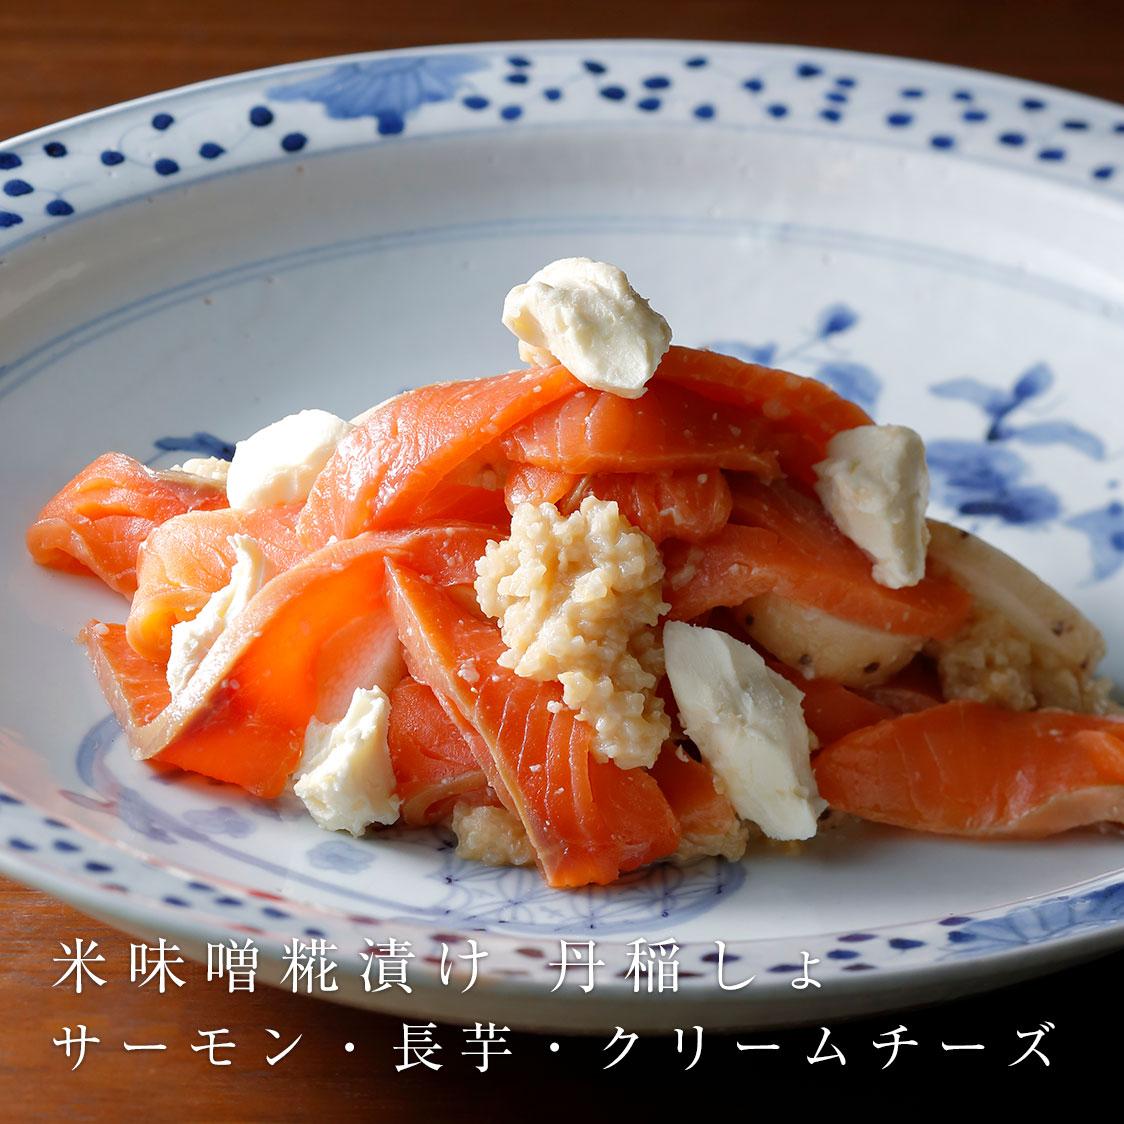 米味噌糀漬け 丹稲しょ サーモン・長芋・クリームチーズ